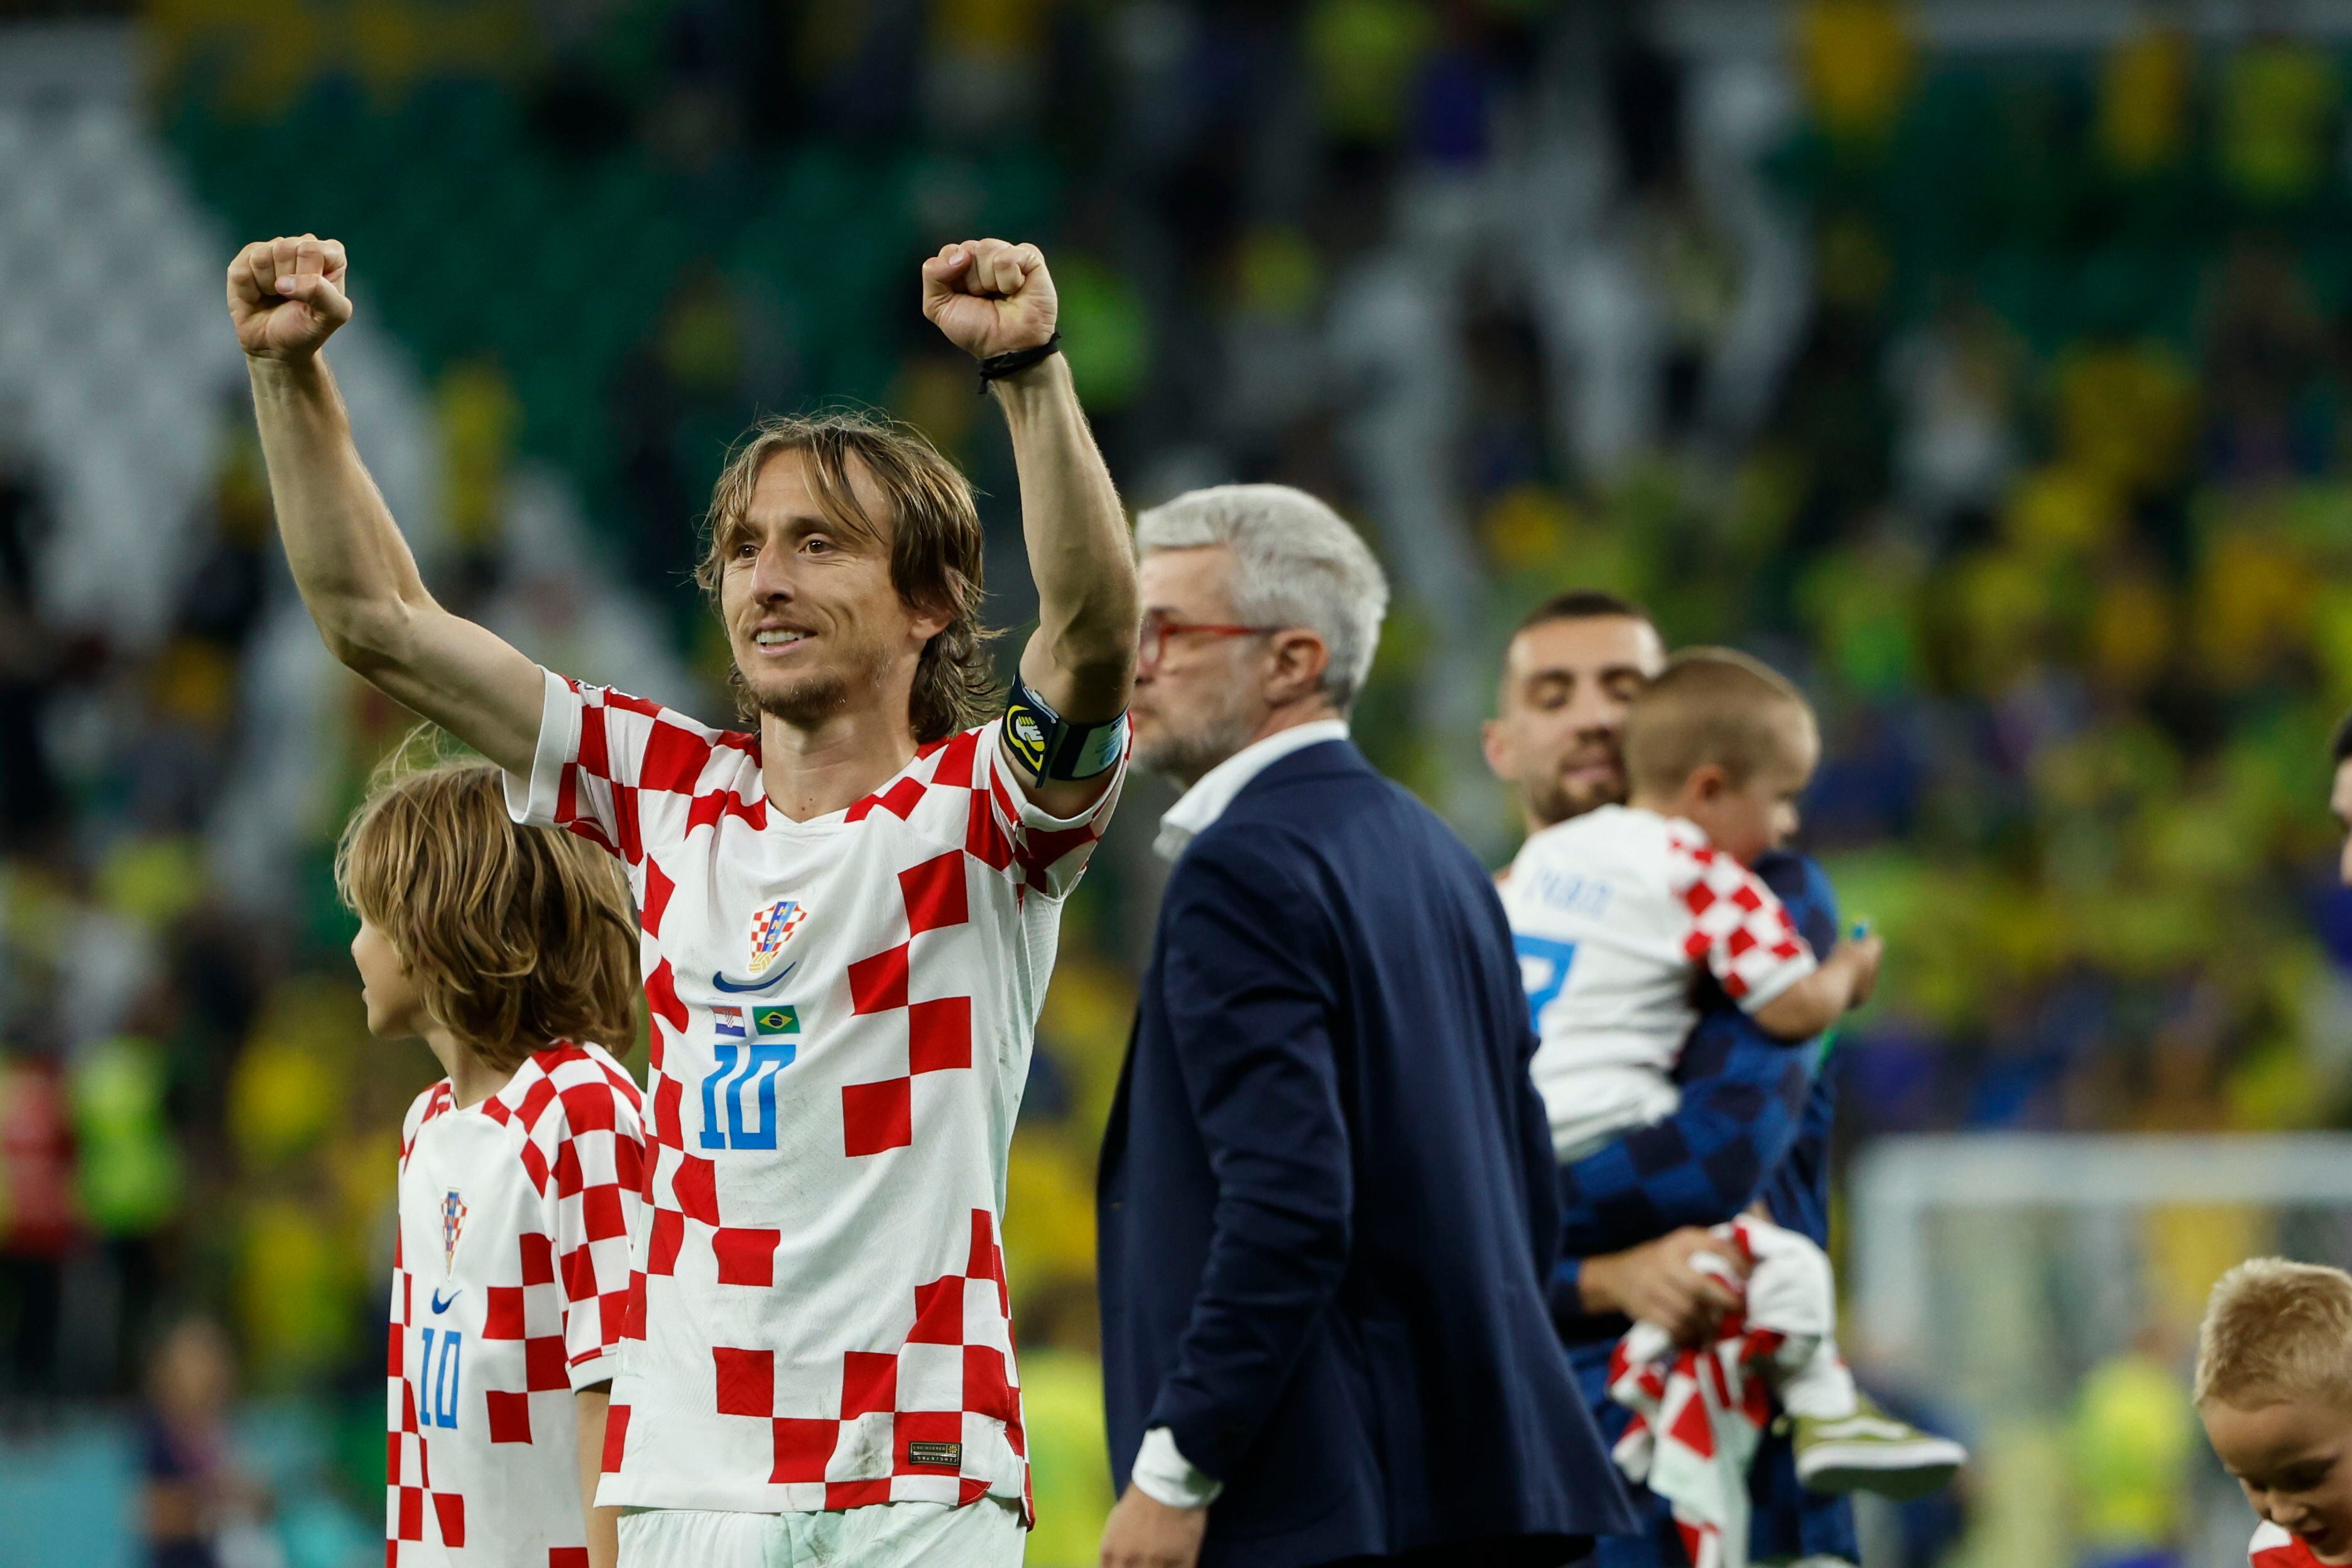 . RAYAN (CATAR), 09/12/2022.- Luka Modric de Croacia celebra al ganar hoy, en un partido de los cuartos de final del Mundial de Fútbol Qatar 2022 en el estadio Ciudad de la Educación en Rayán (Catar). EFE/Juanjo Martin